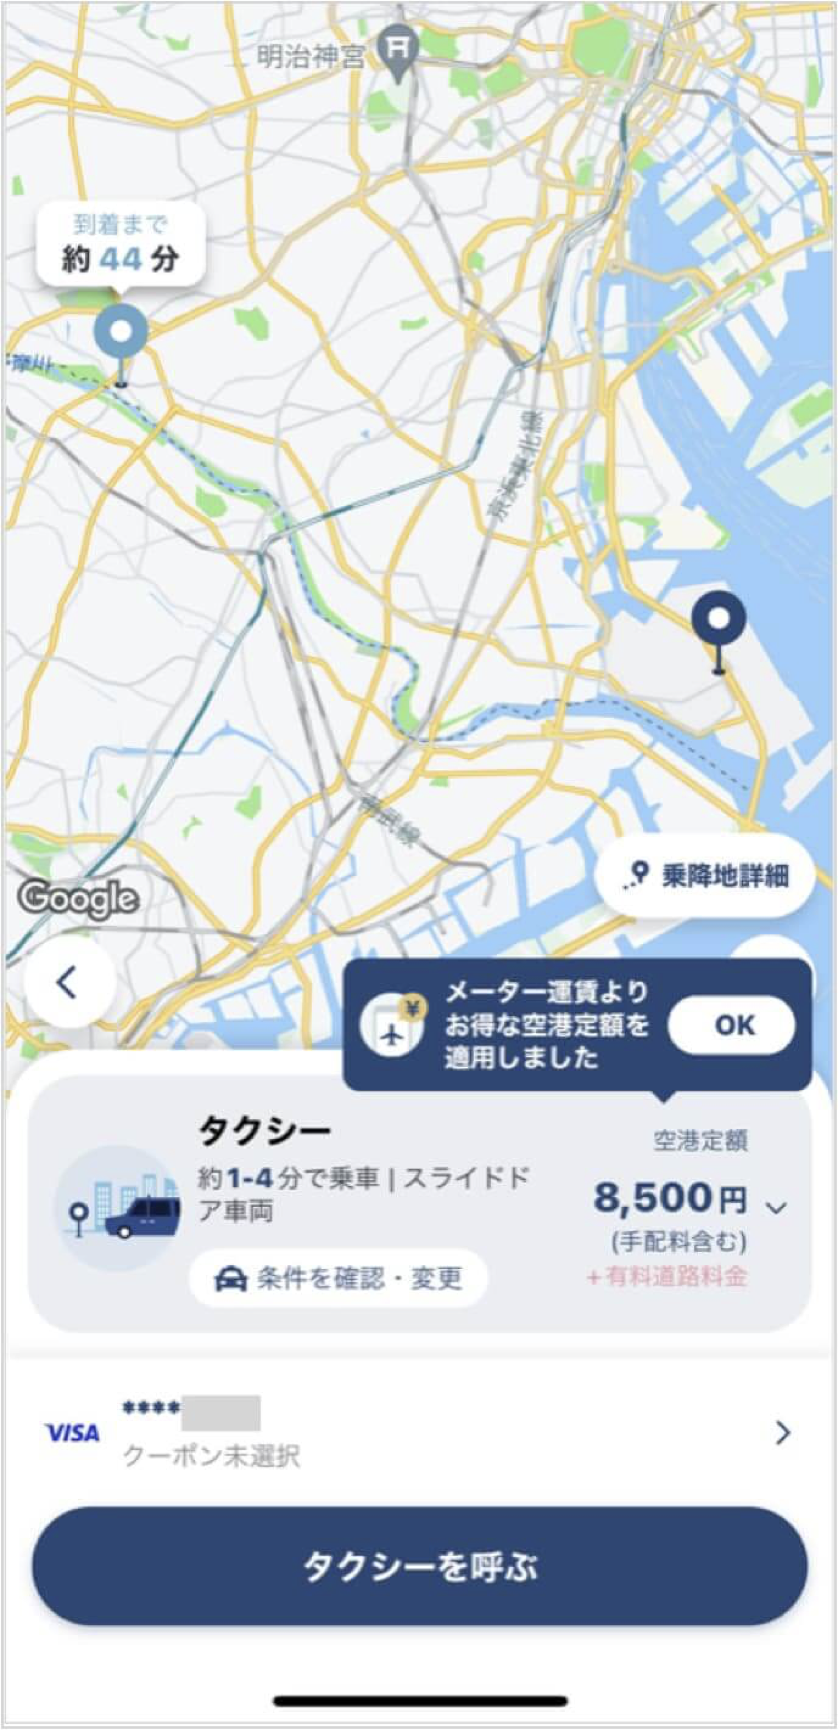 羽田空港から渋谷までのタクシー料金・所要時間まとめ